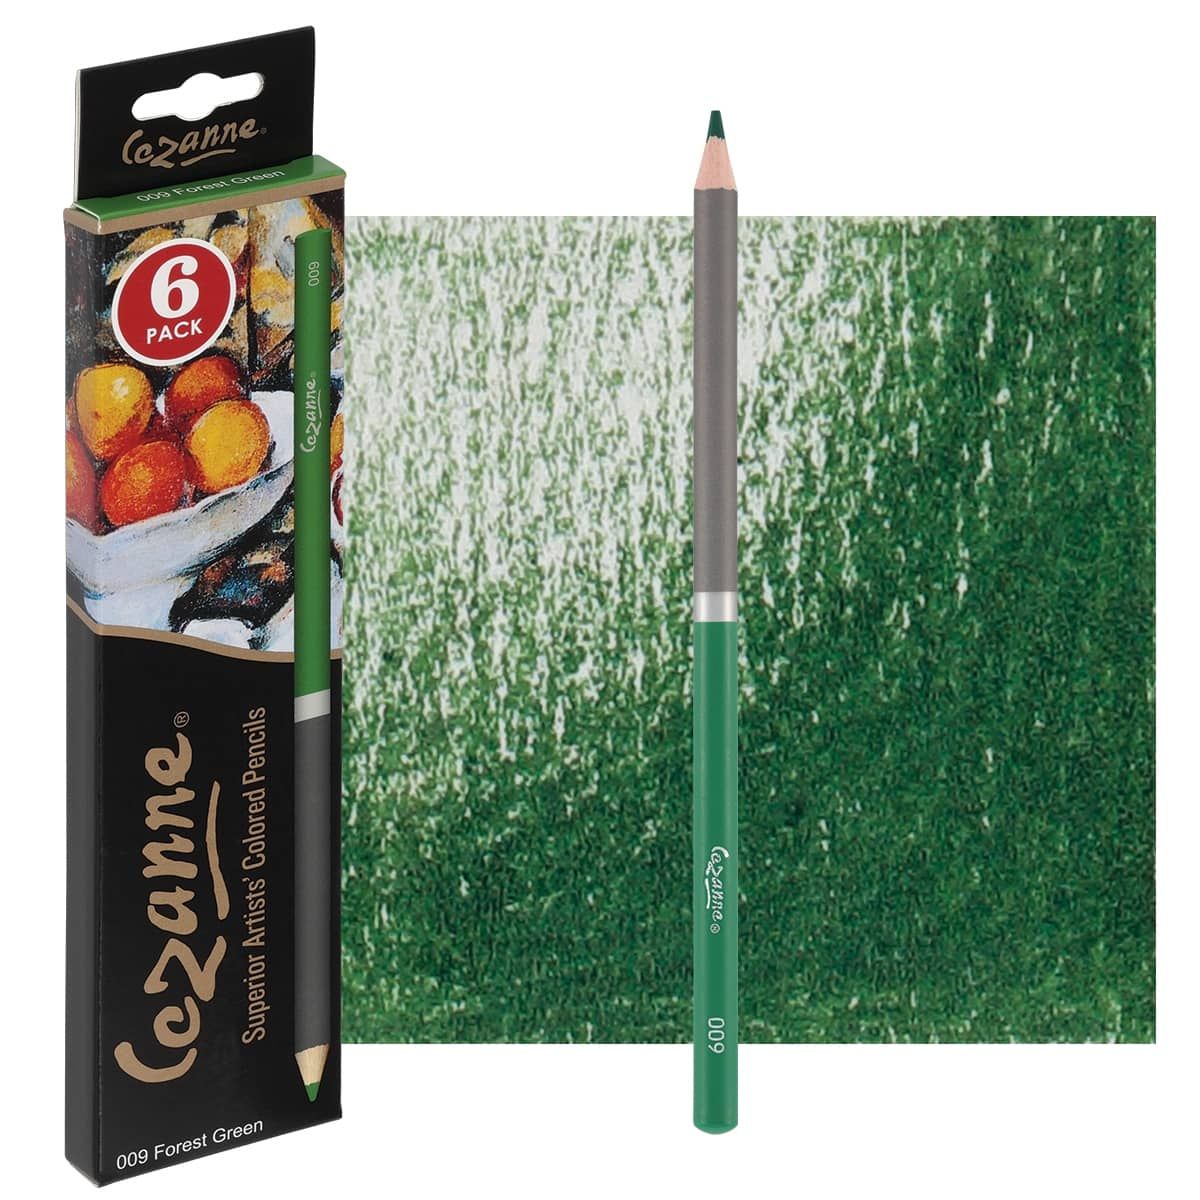 Cezanne Premium Colored Pencils - Forest Green, Box of 6